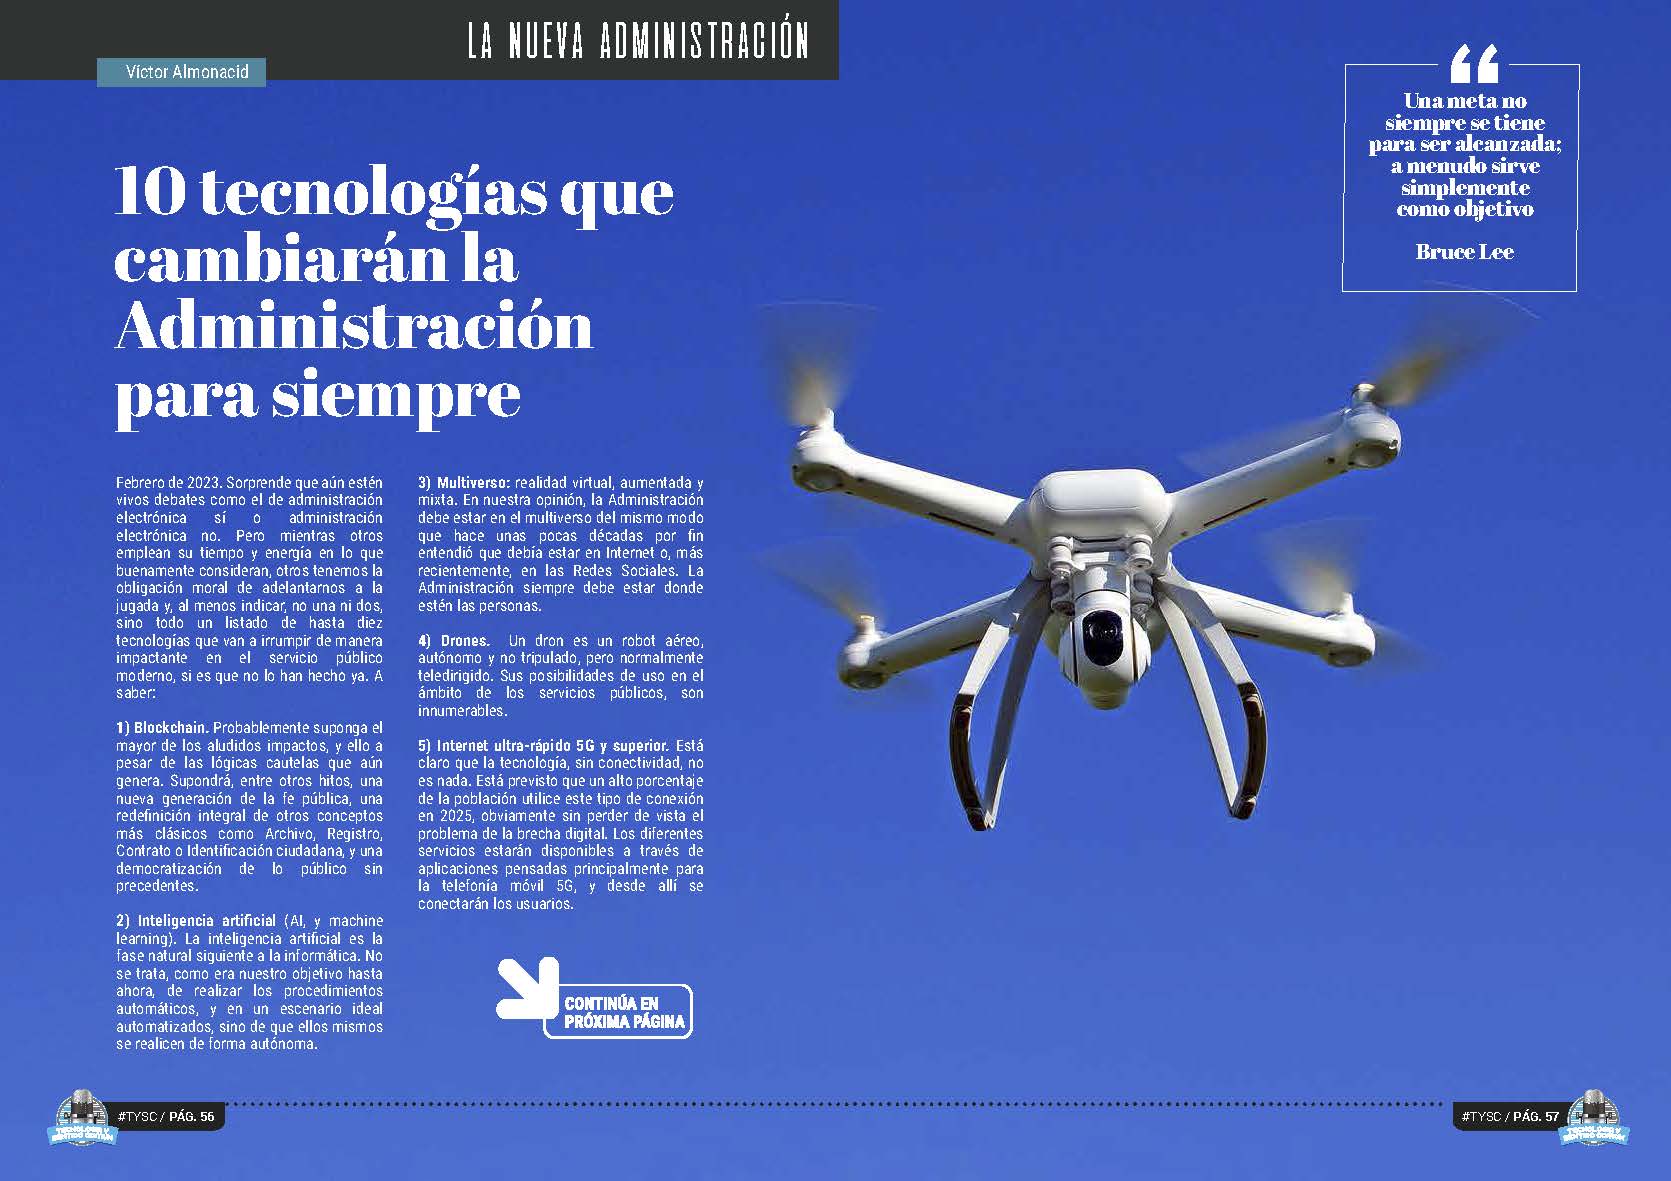 Robótica, drones y electrónica